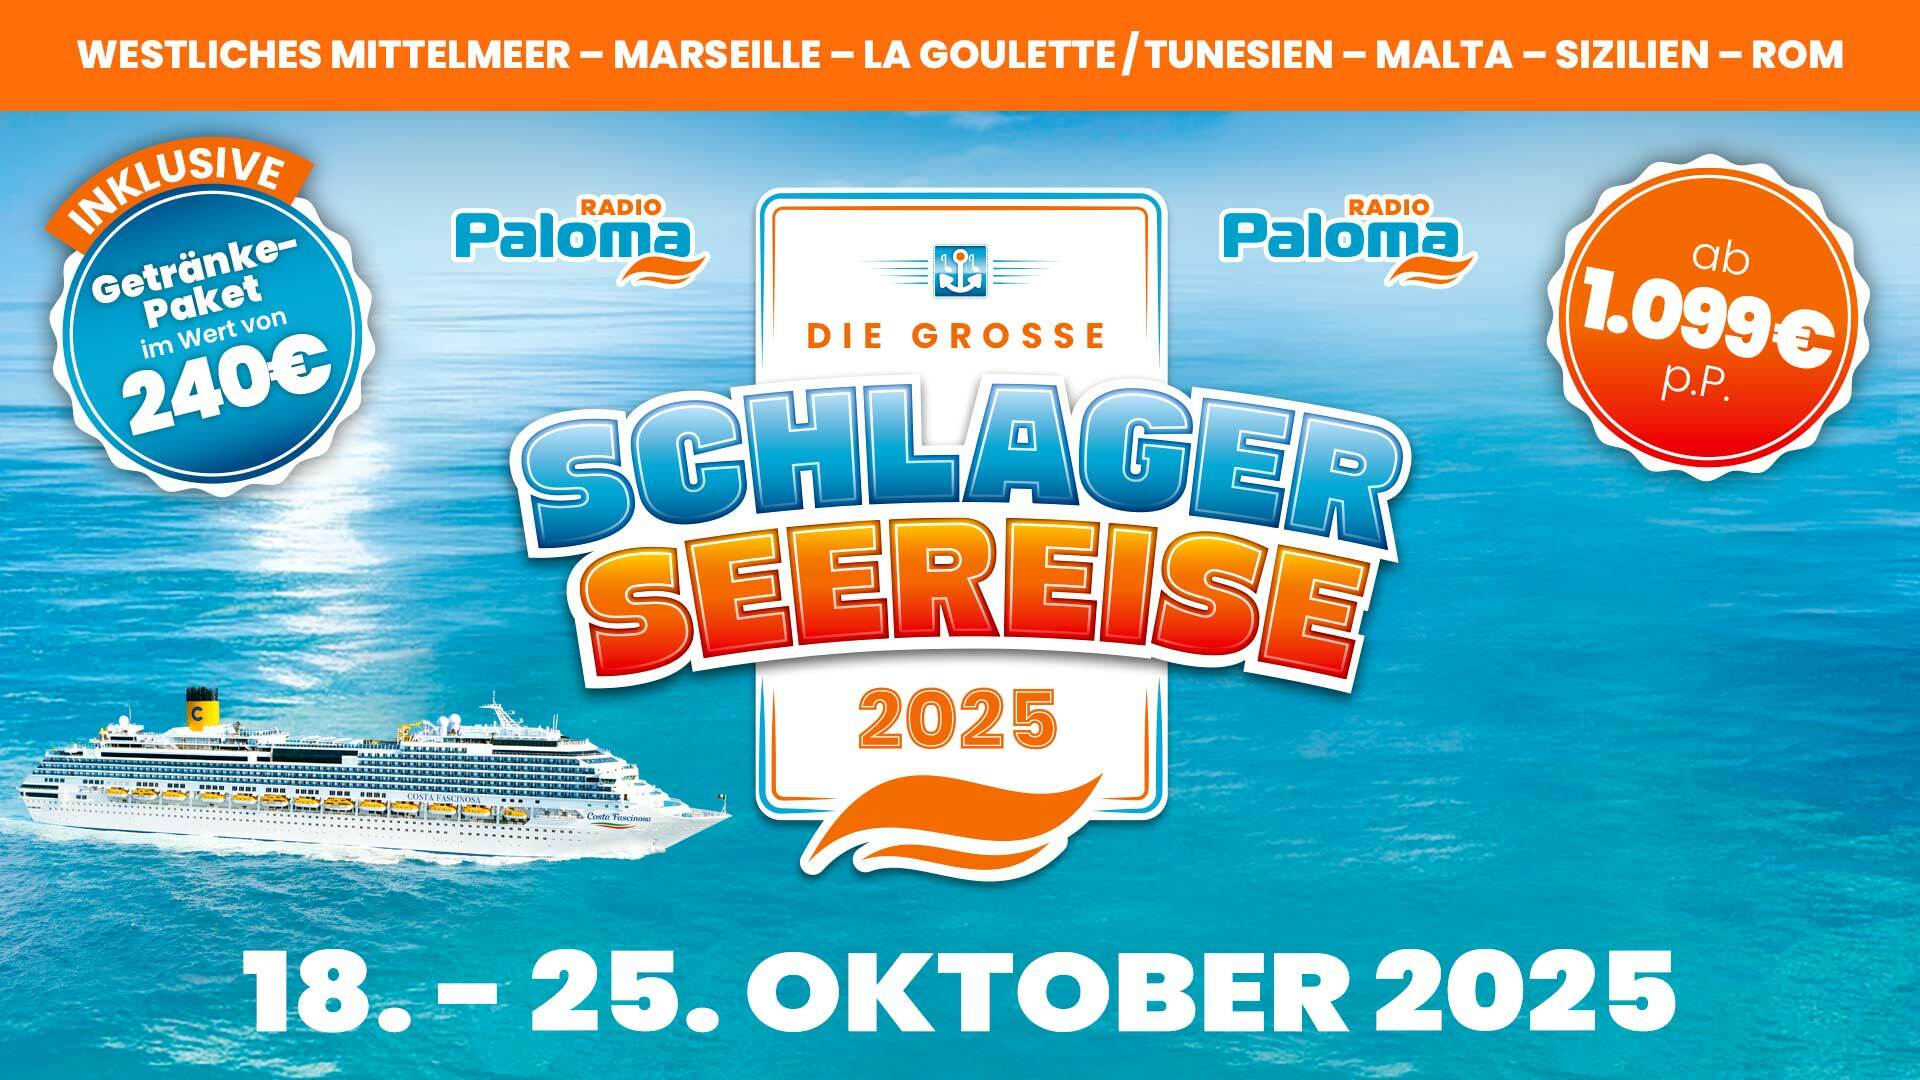 Im Oktober 2025 erwartet Euch „Die große Schlager-Seereise 2025“